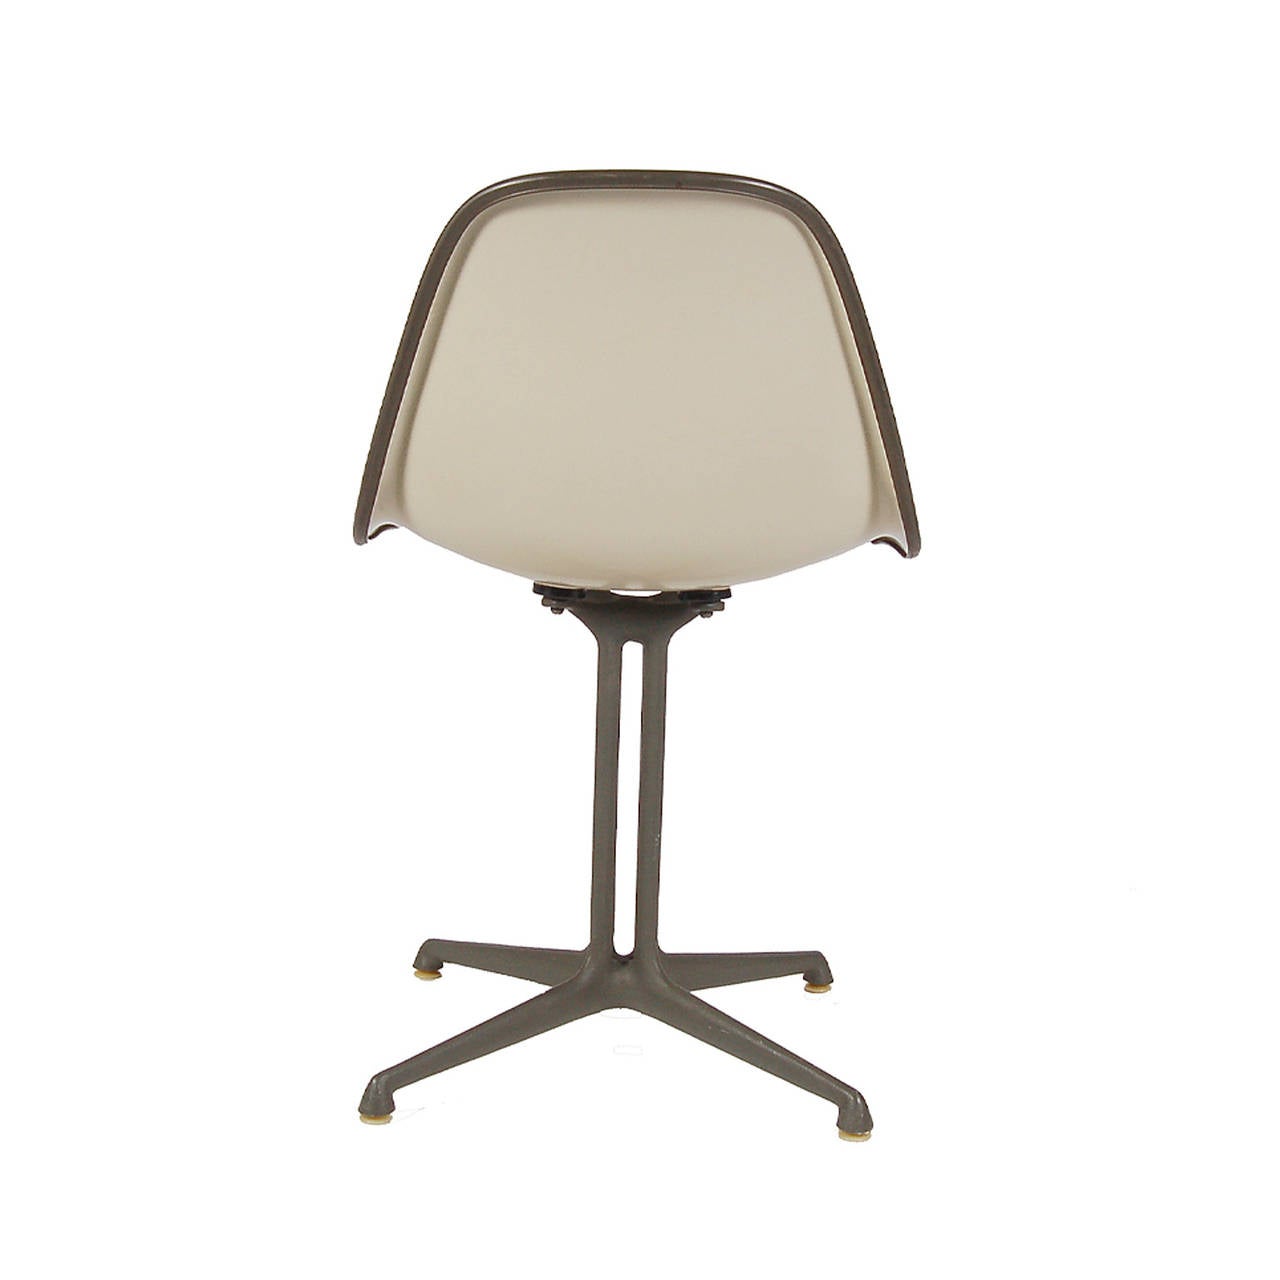 Mid-20th Century La Fonda Side Chair by Charles Eames